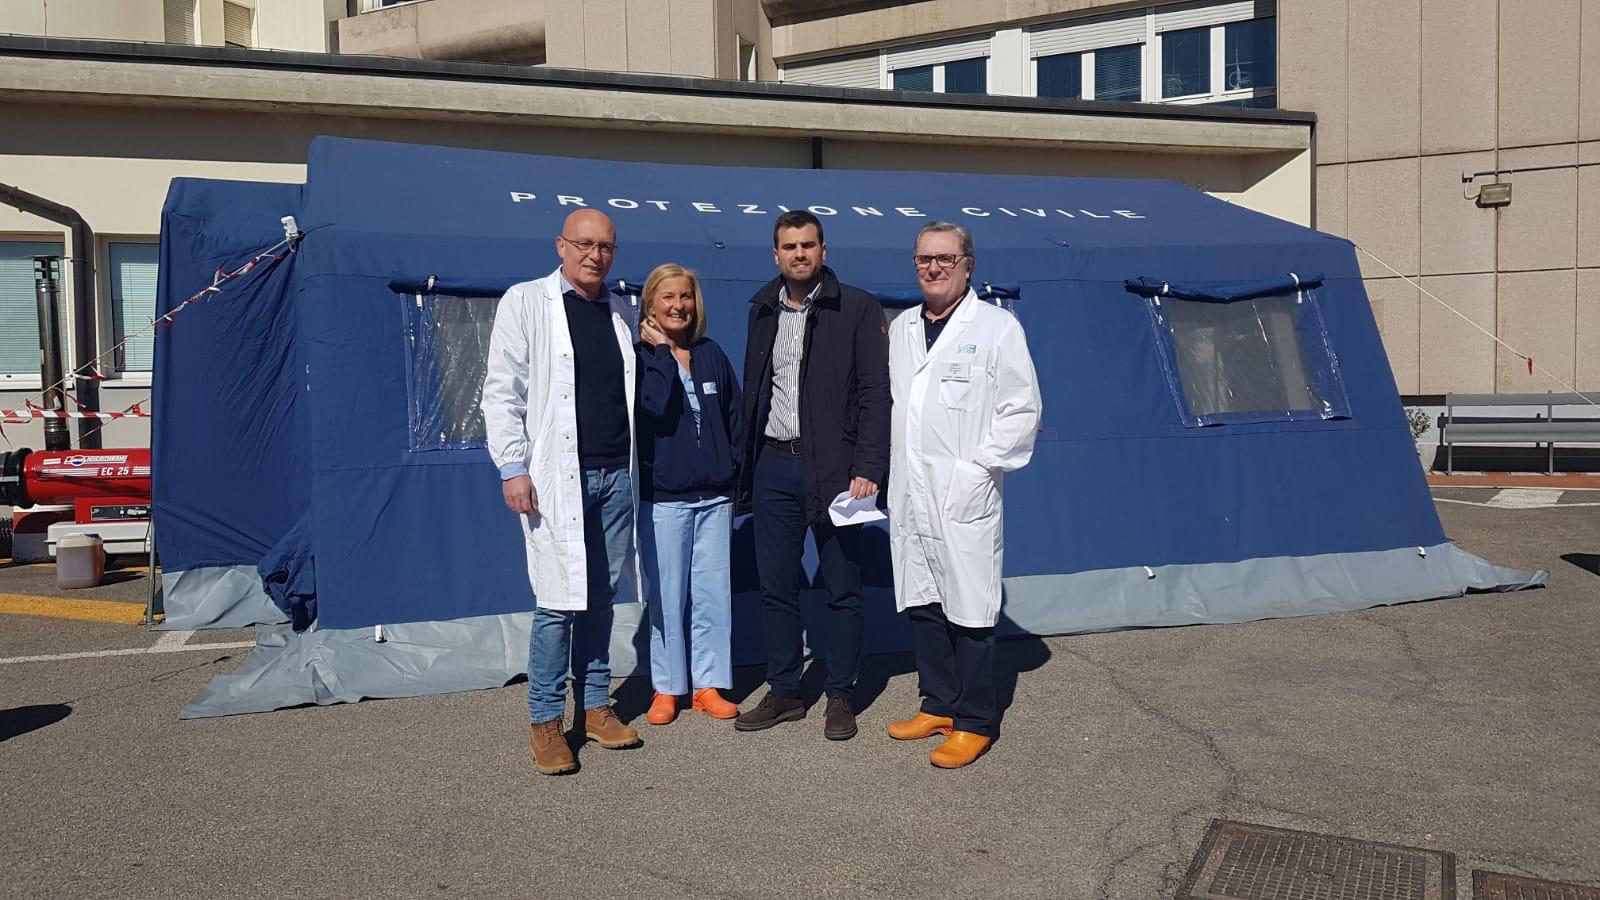 Installati e operativi i pretriage in tutti gli ospedali della Asl Toscana sud est